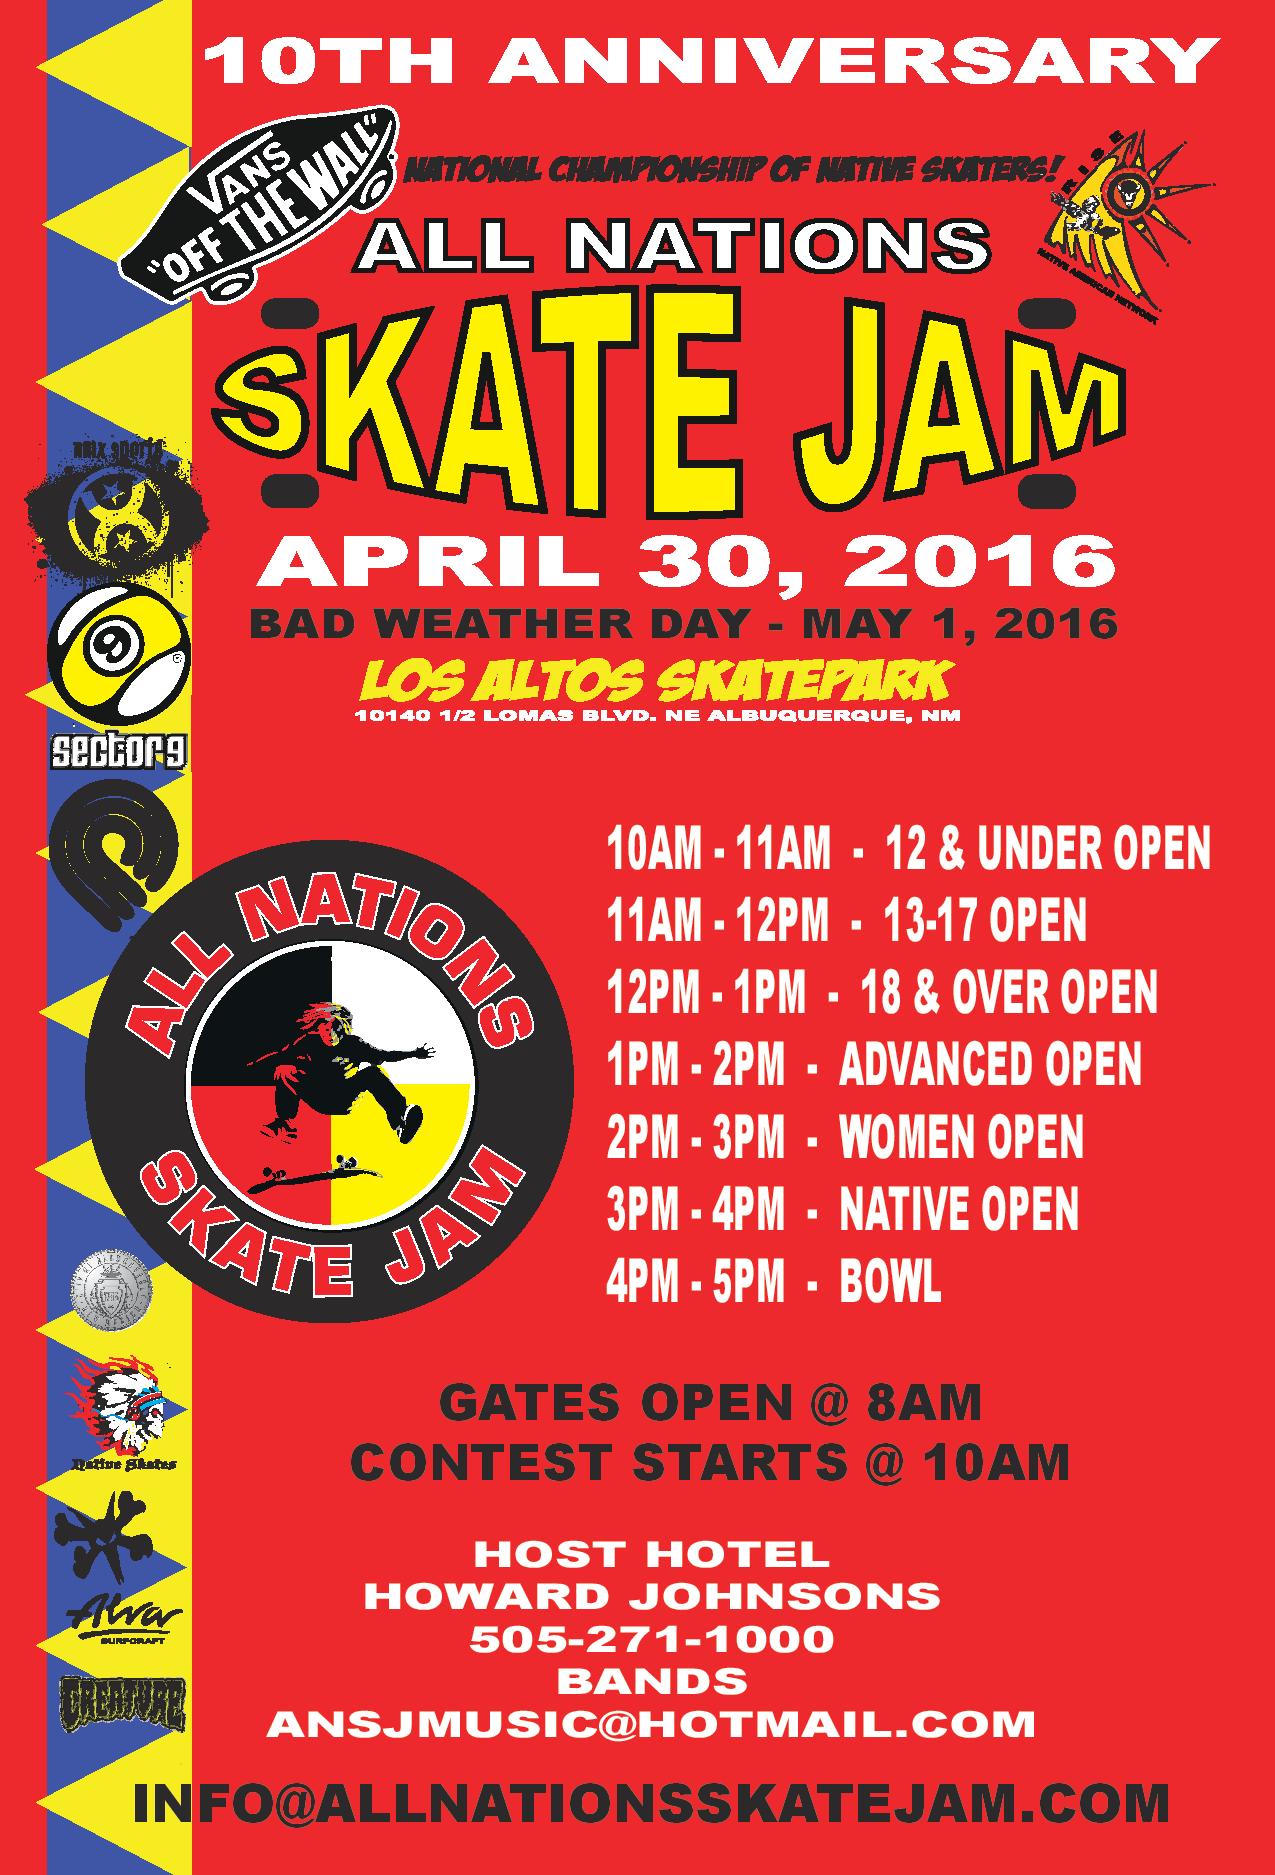 Albuquerque, NM – All Nations Skate Jam